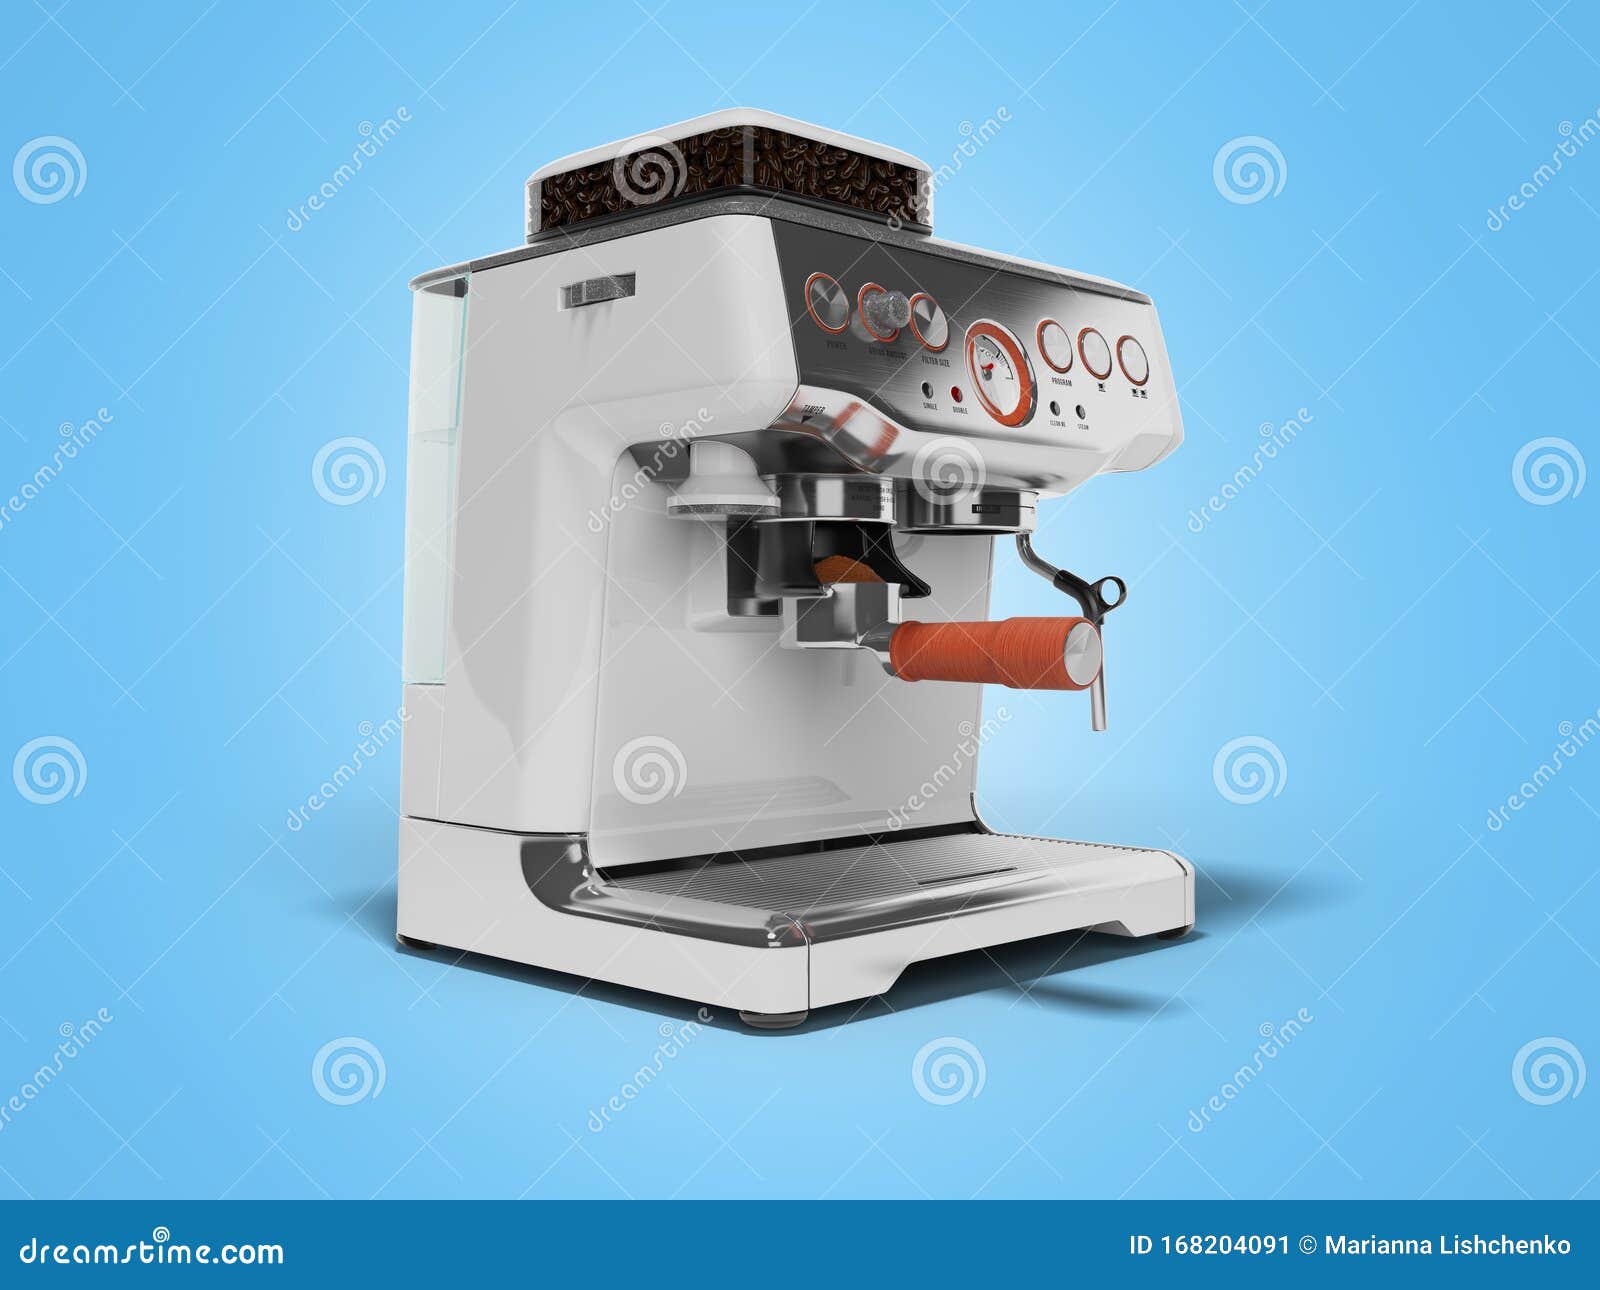 Chiếc máy pha cà phê này không chỉ hỗ trợ bạn trong công việc mà còn tạo nên sự tiện lợi trong cuộc sống hàng ngày. Sử dụng thiết bị này, bạn có thể tự tay pha cho mình một ly cà phê tuyệt đỉnh mà không cần phải ra quán. Hãy xem ảnh và cảm nhận sự tiện dụng của sản phẩm này nhé!